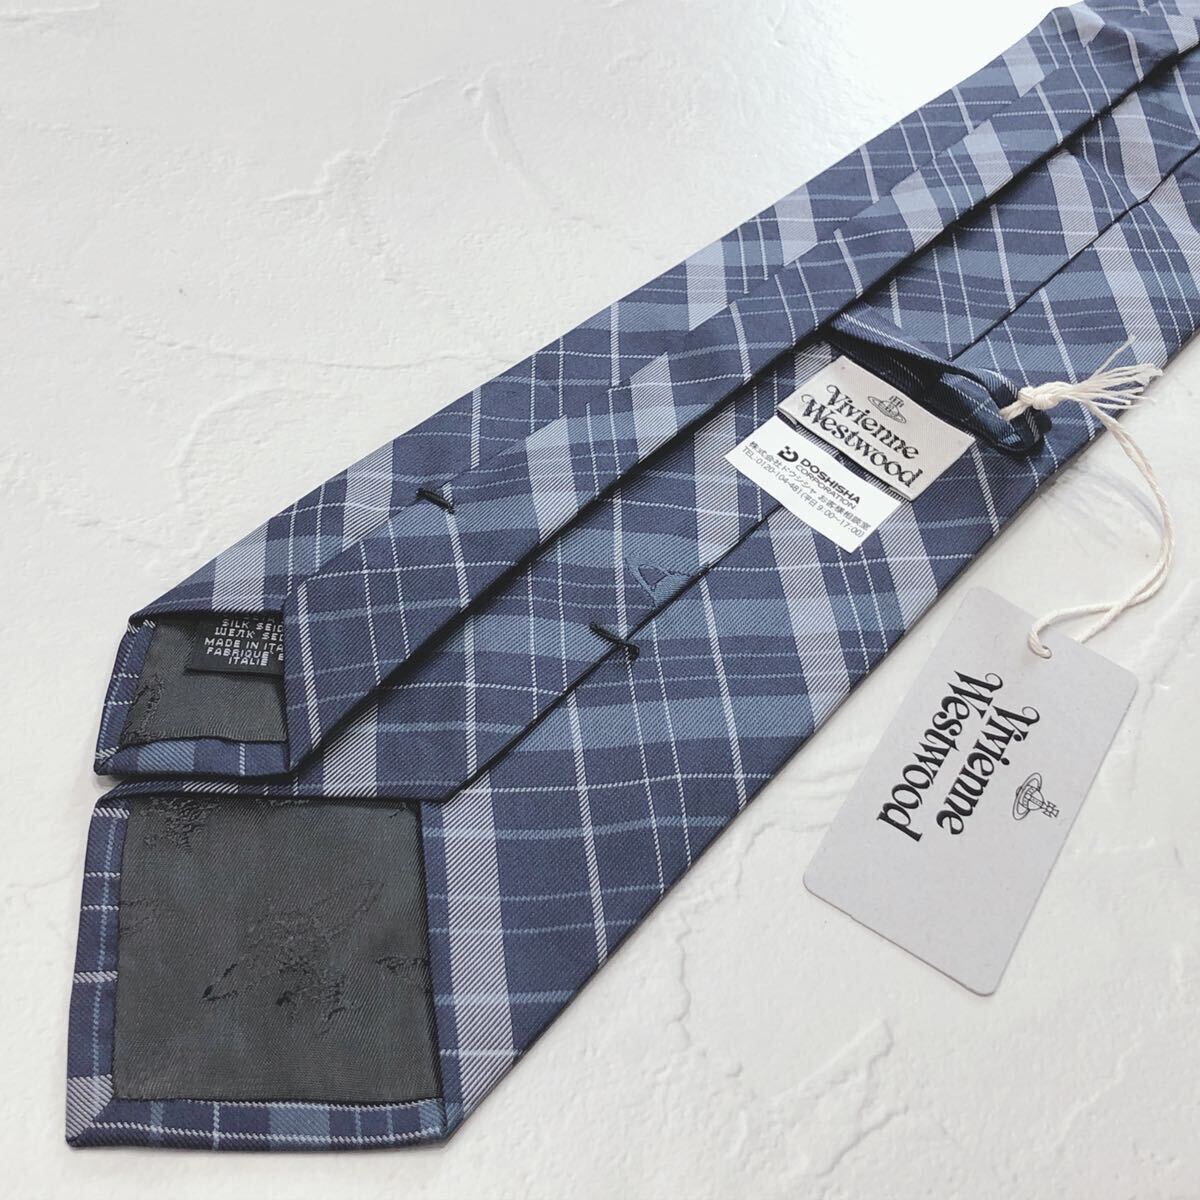 * новый товар не использовался * VivienneWestwood Vivienne Westwood галстук бренд галстук синий blue цвет в клетку с биркой прекрасный товар бесплатная доставка 